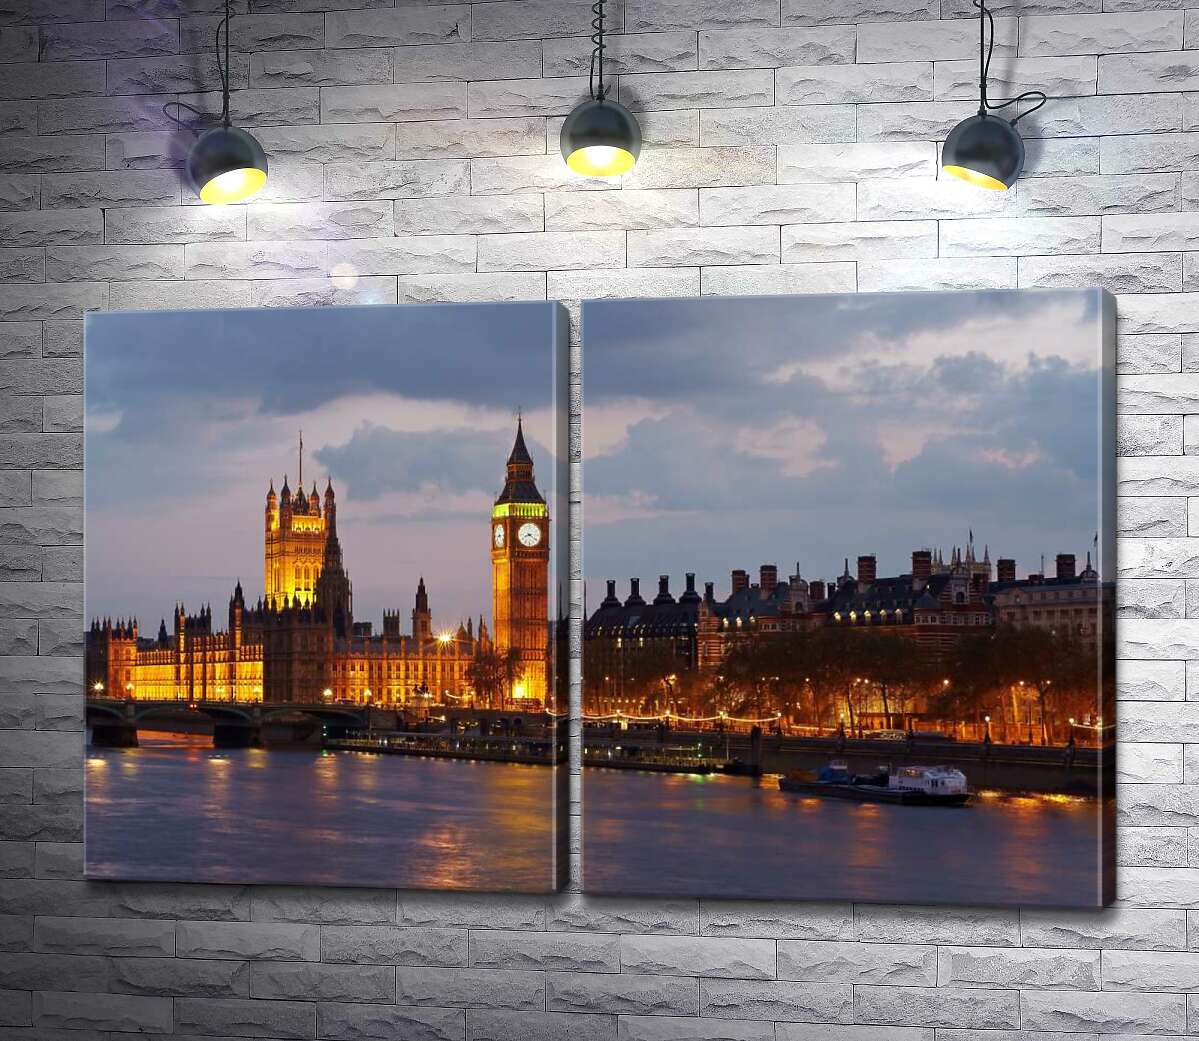 модульная картина Вечерняя набережная Темзы сияет огнями Вестминстерского дворца (Palace of Westminster)